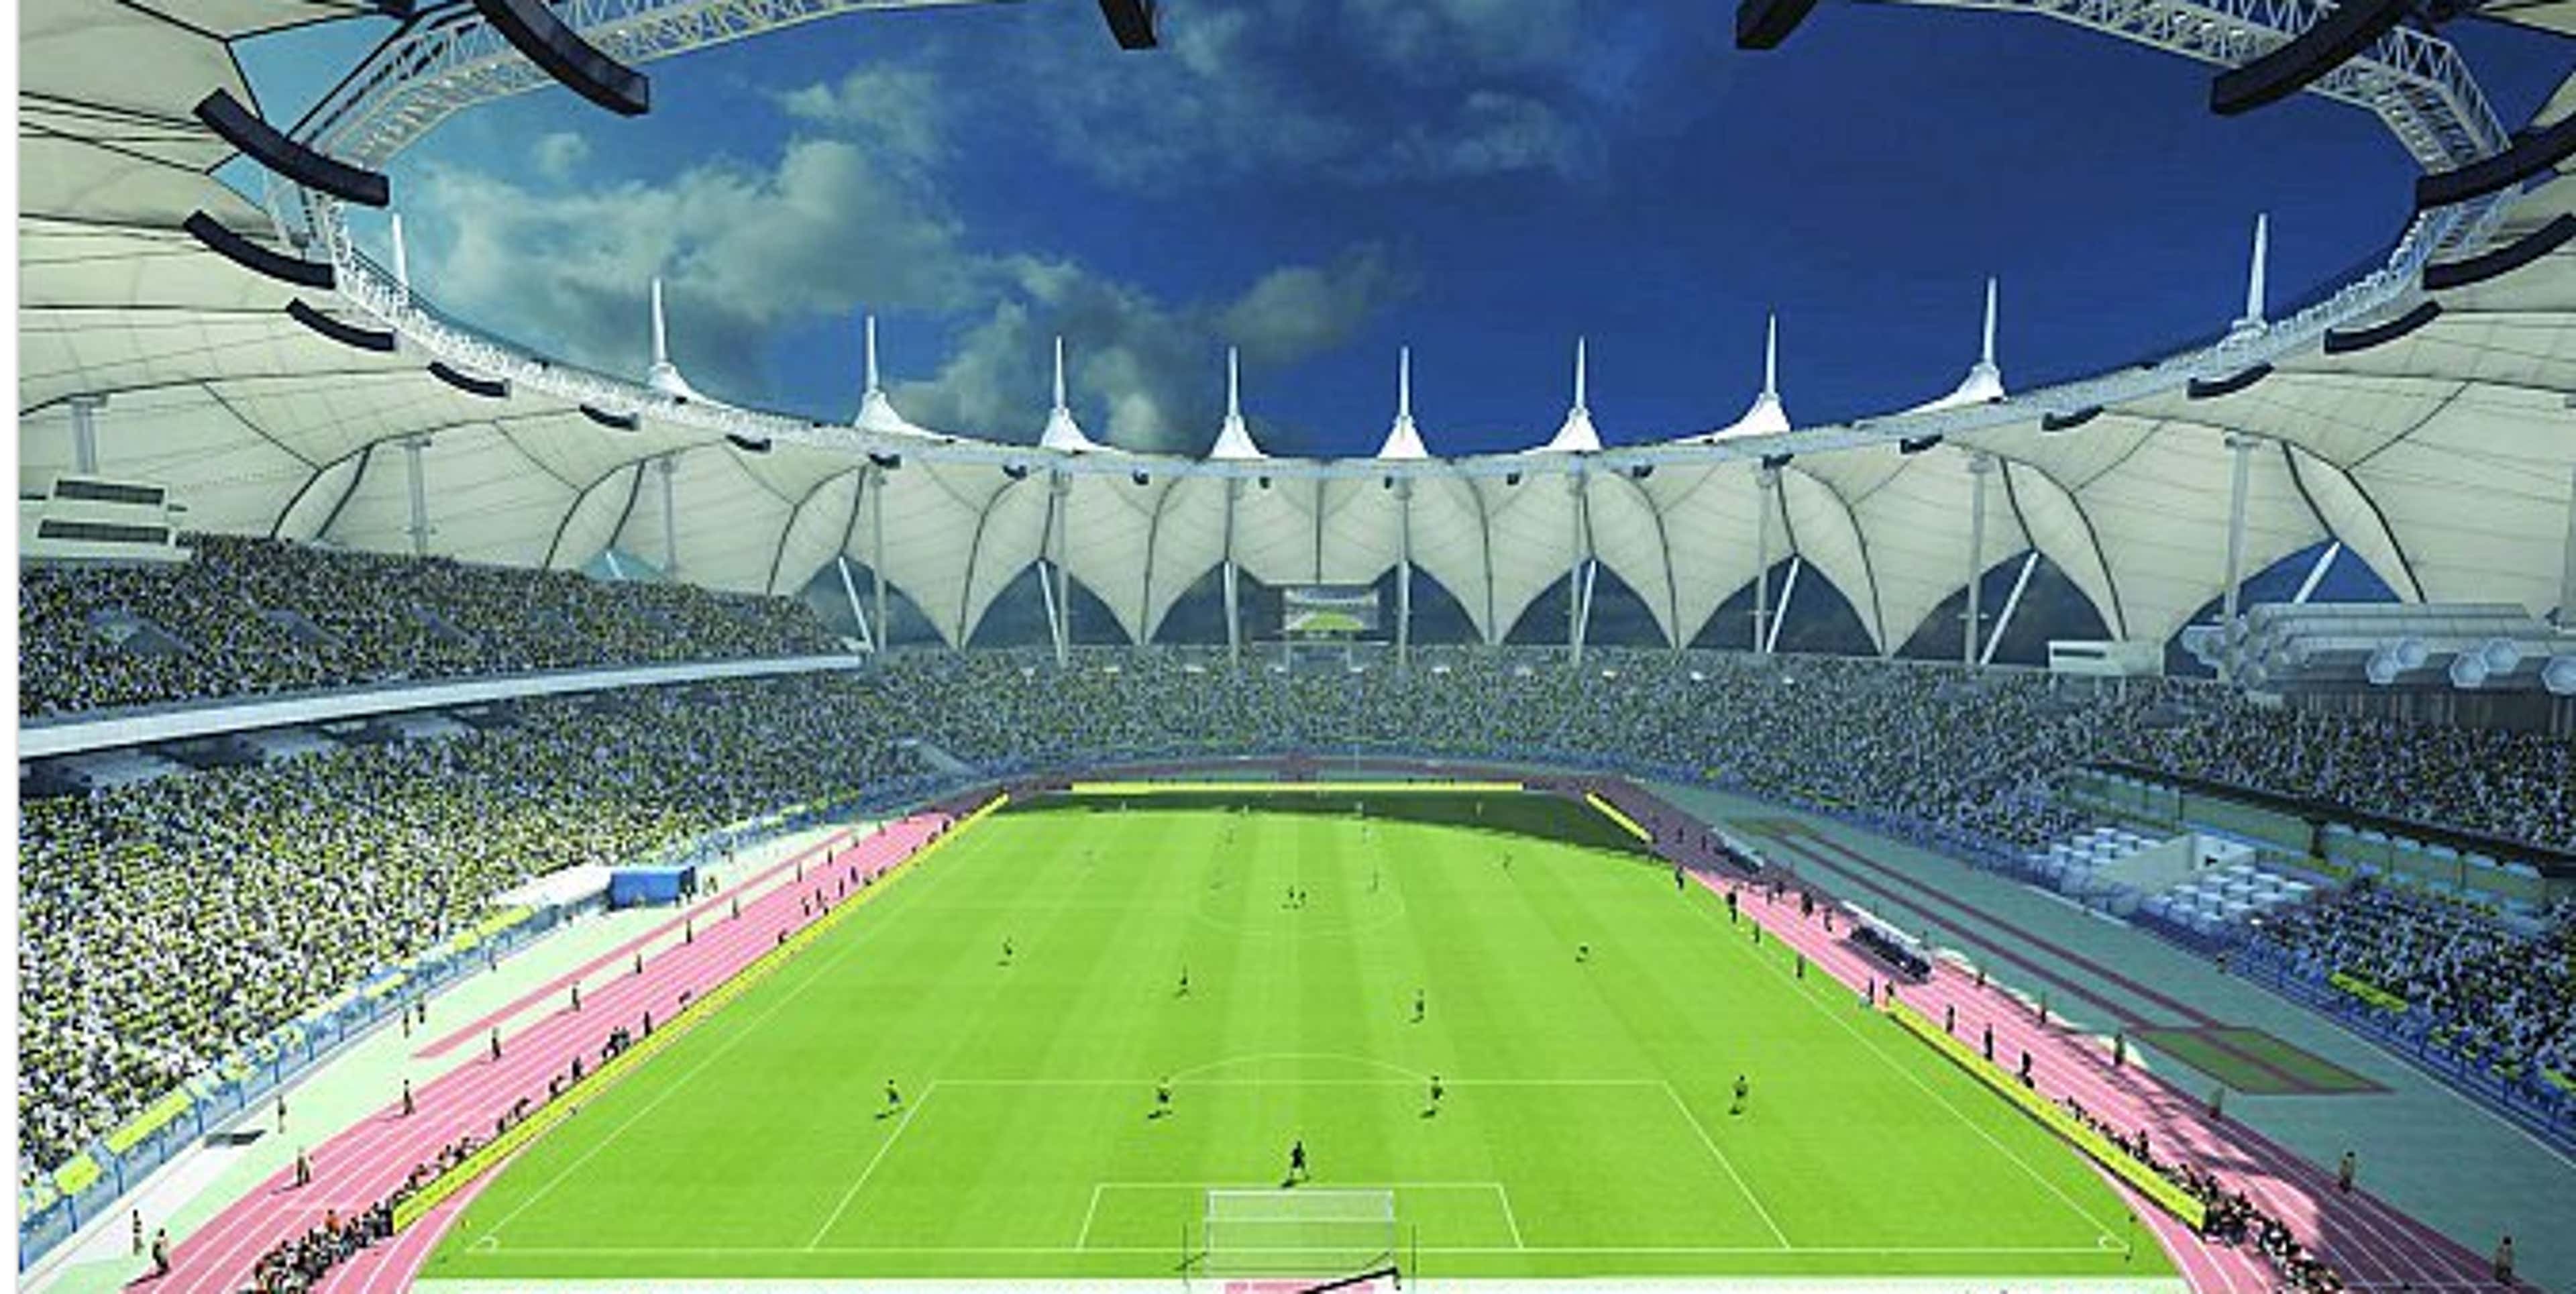 Международный стадион. Стадион короля Фахда. Кинг Фахд Интернешнл стадион. Эр-Рияд стадион. Международный стадион имени короля Фахда Эр-Рияд, Саудовская Аравия.